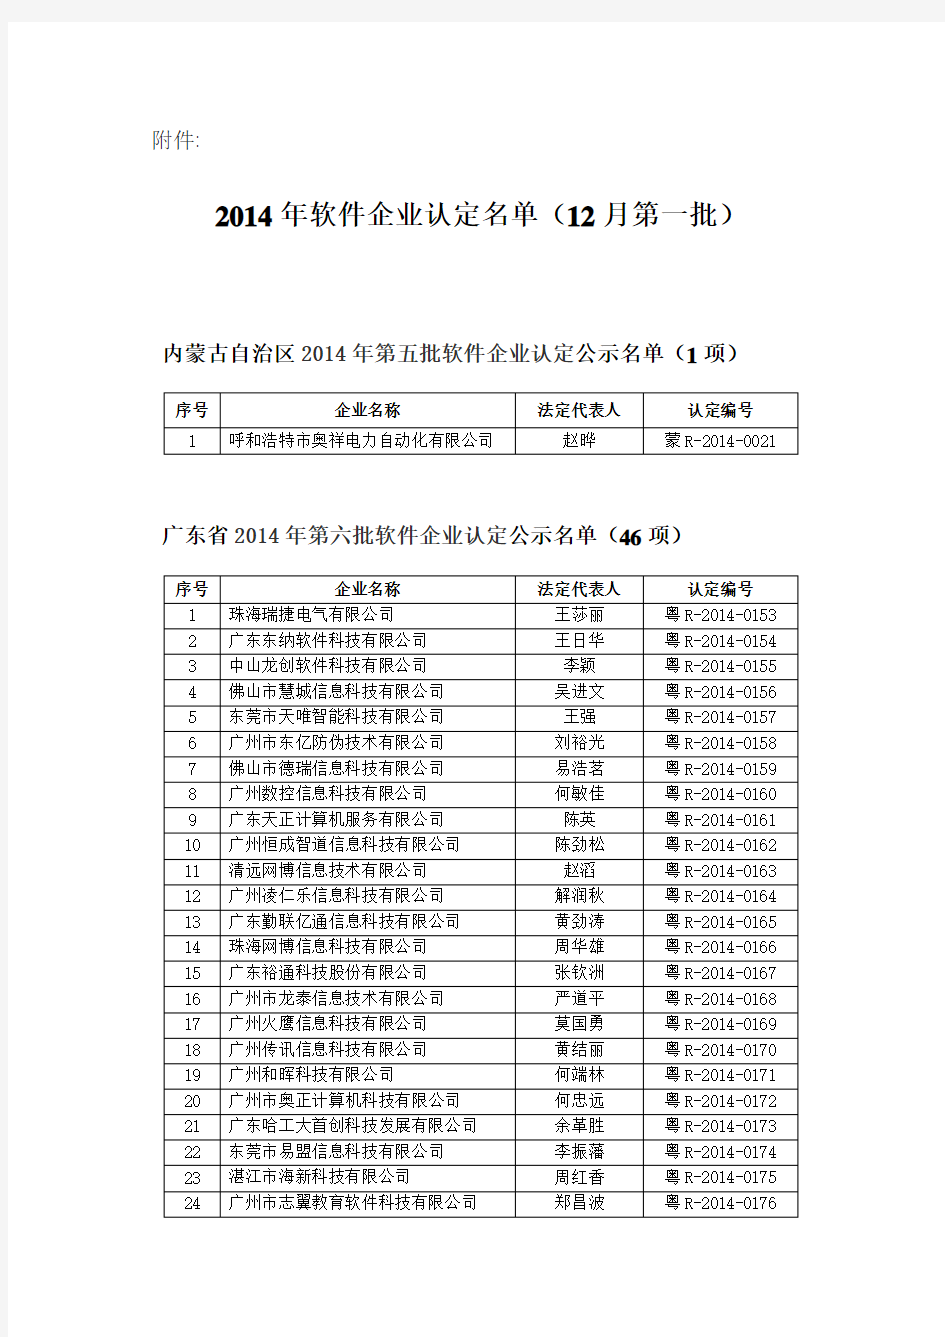 20141208 2014年软件企业认定名单(12月第一批)